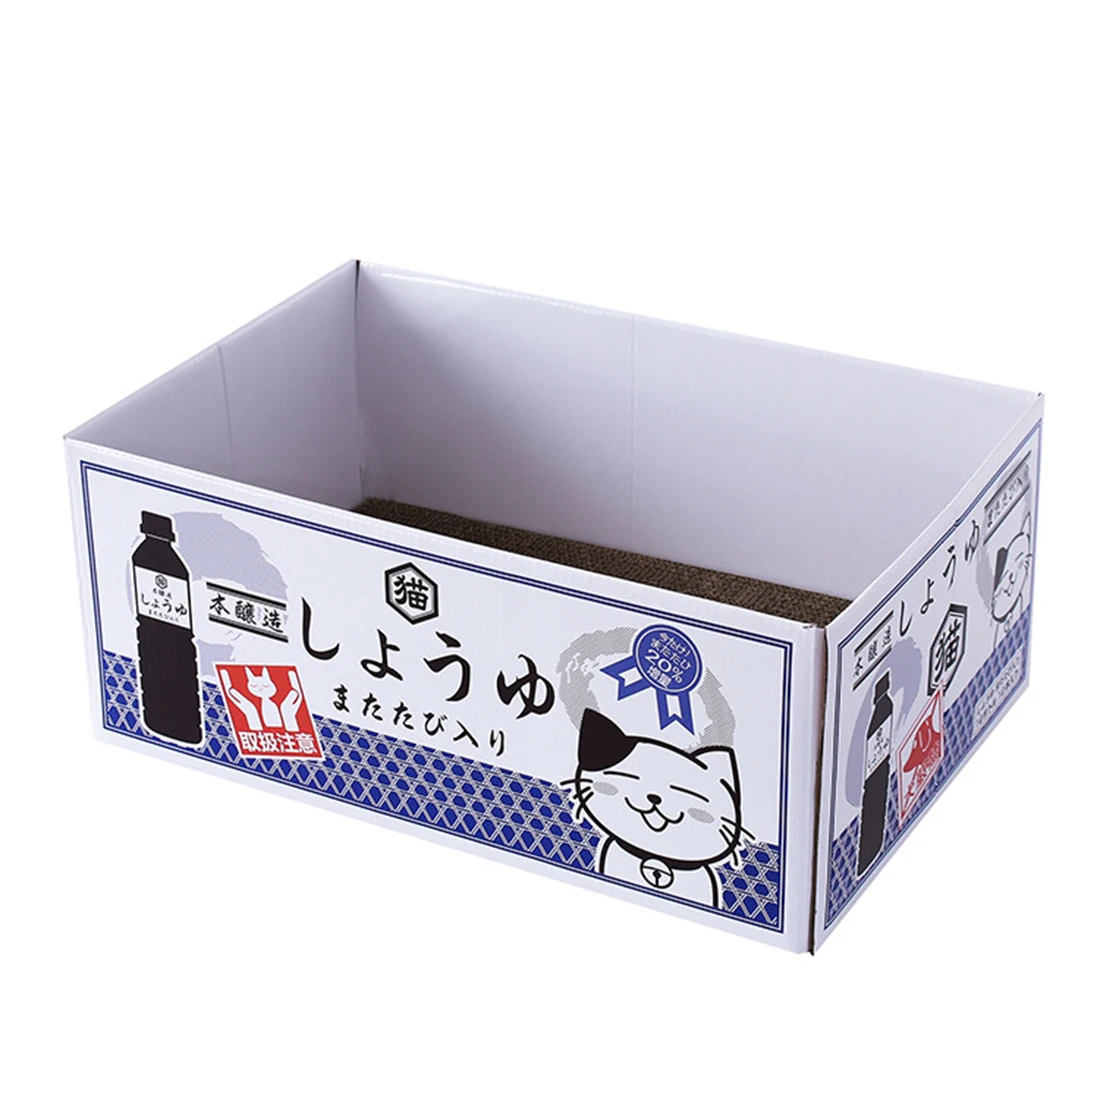 PETFORU бутылка для воды шаблон гофрированная бумага Когтеточка картонная коробка для кошки